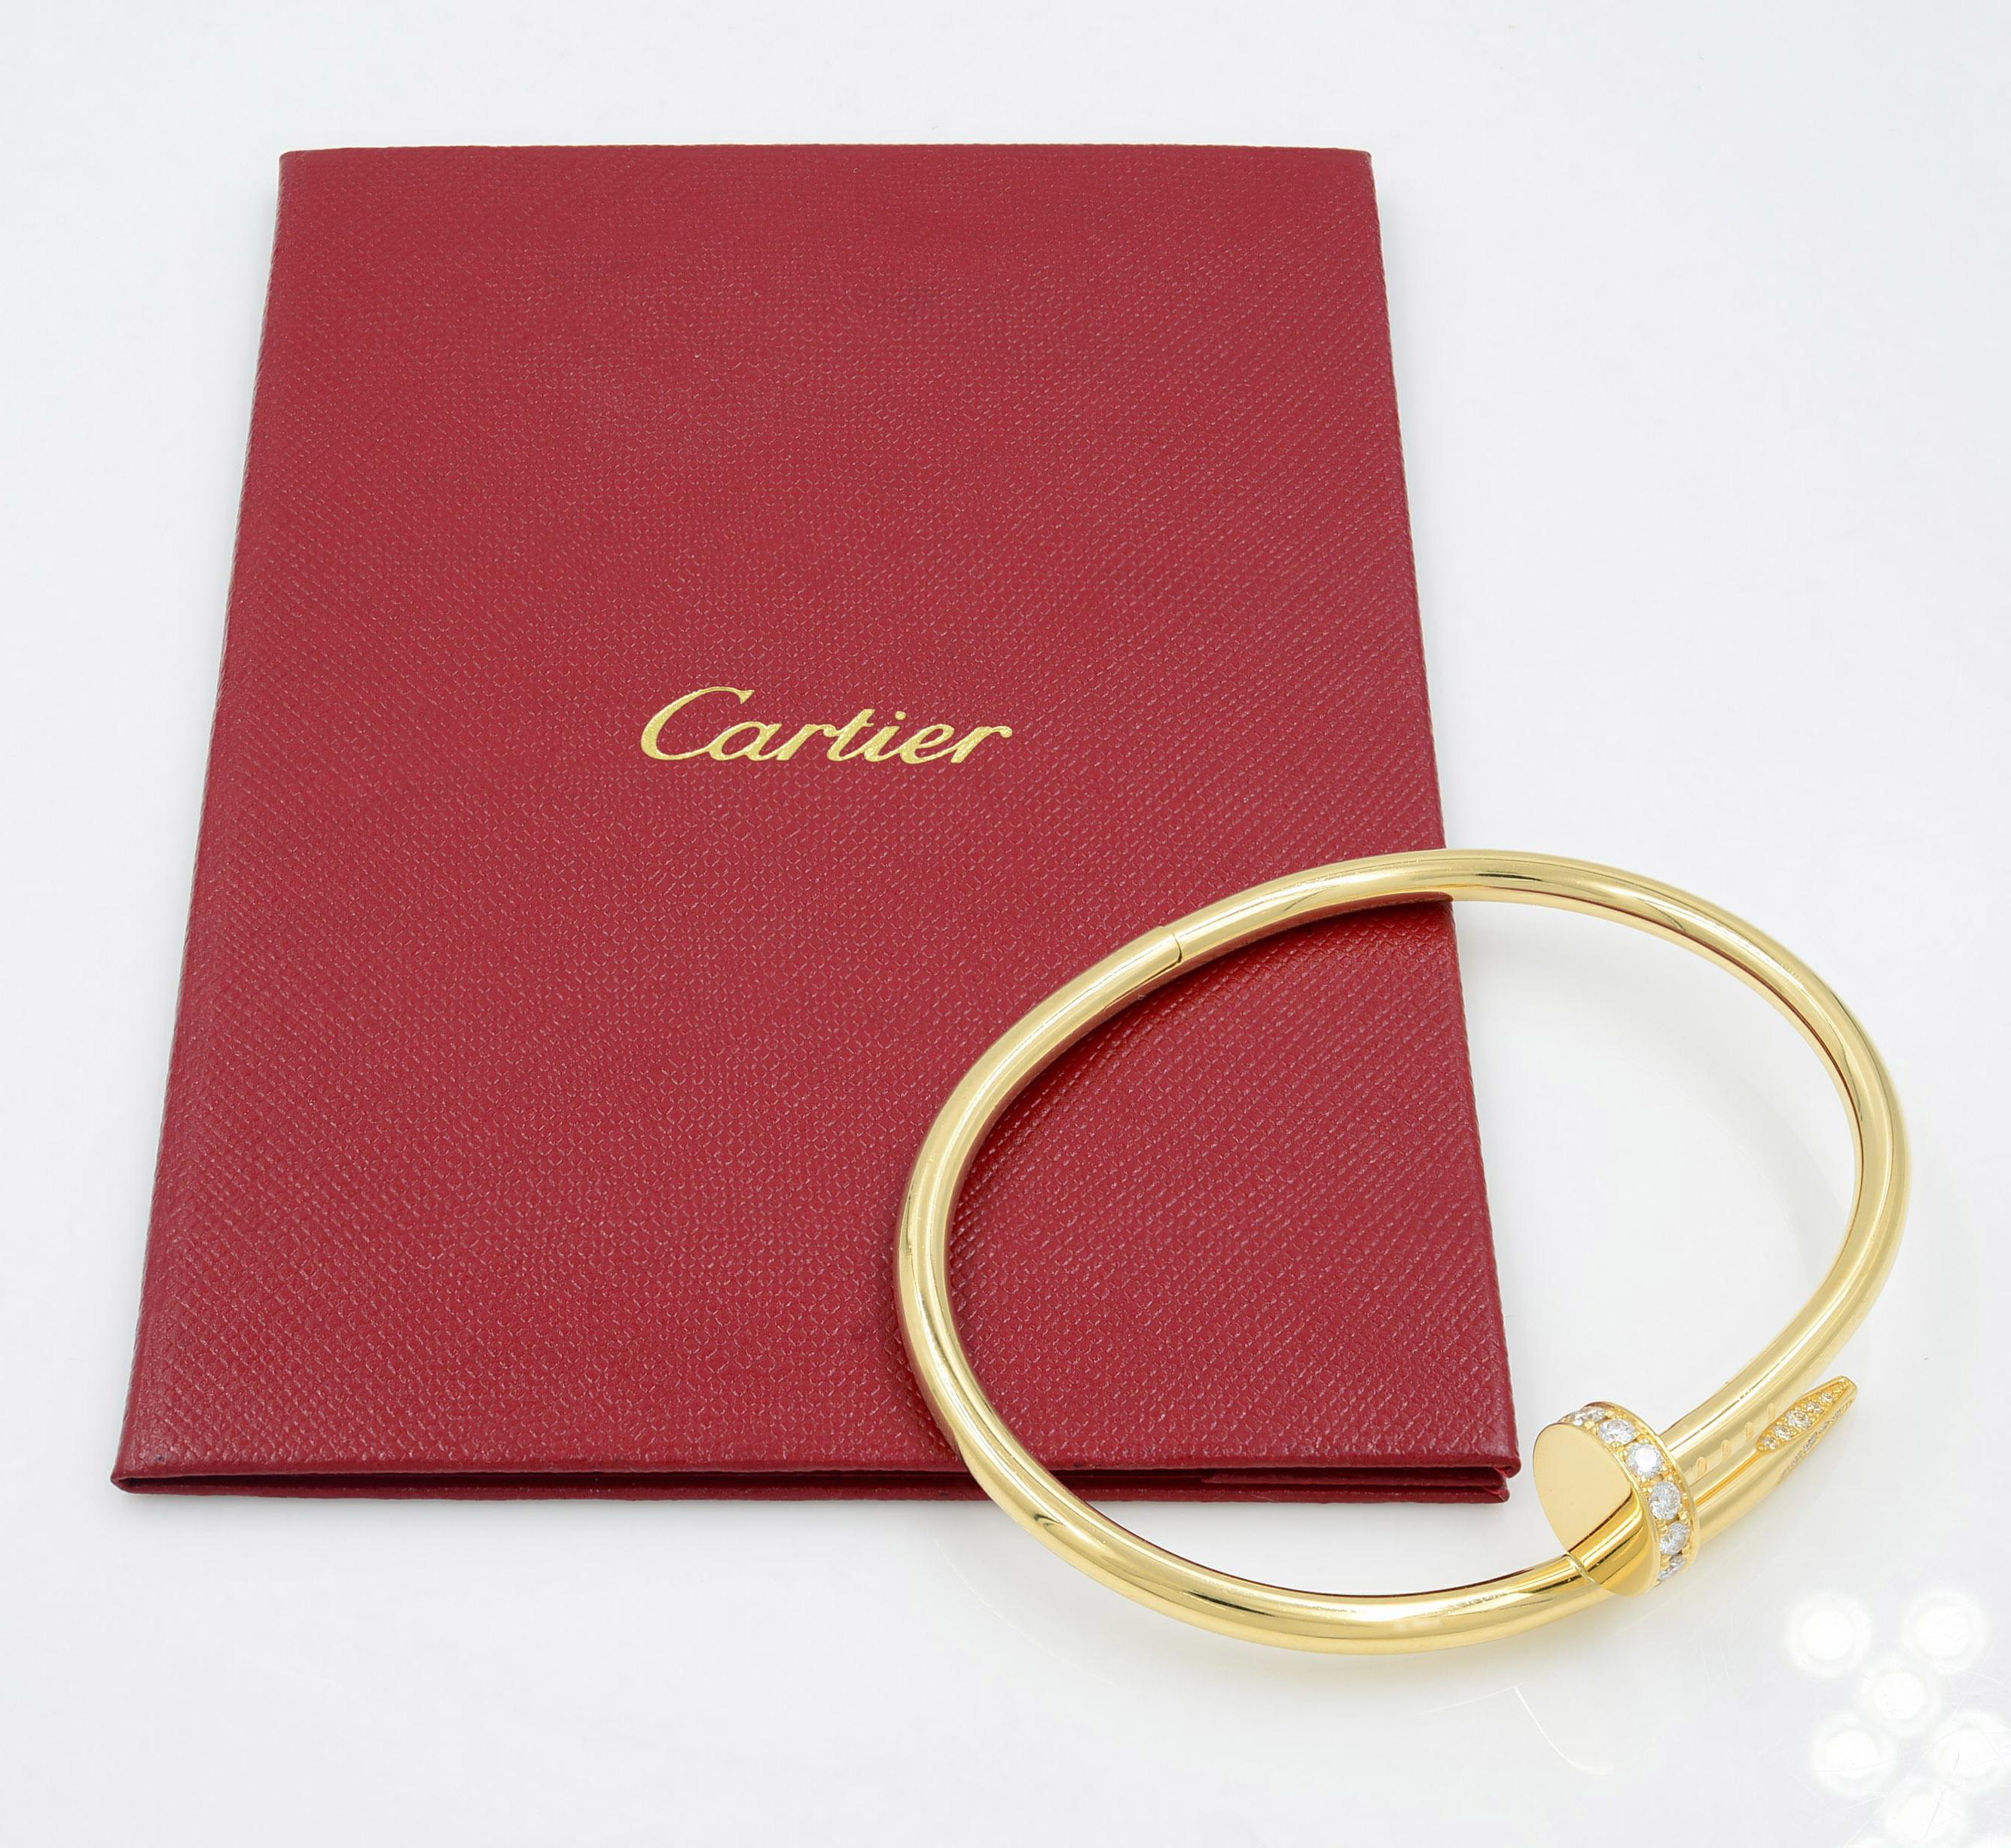 Cartier Juste Un Clou 18K Yellow Gold with Diamonds Bracelet SZ17
